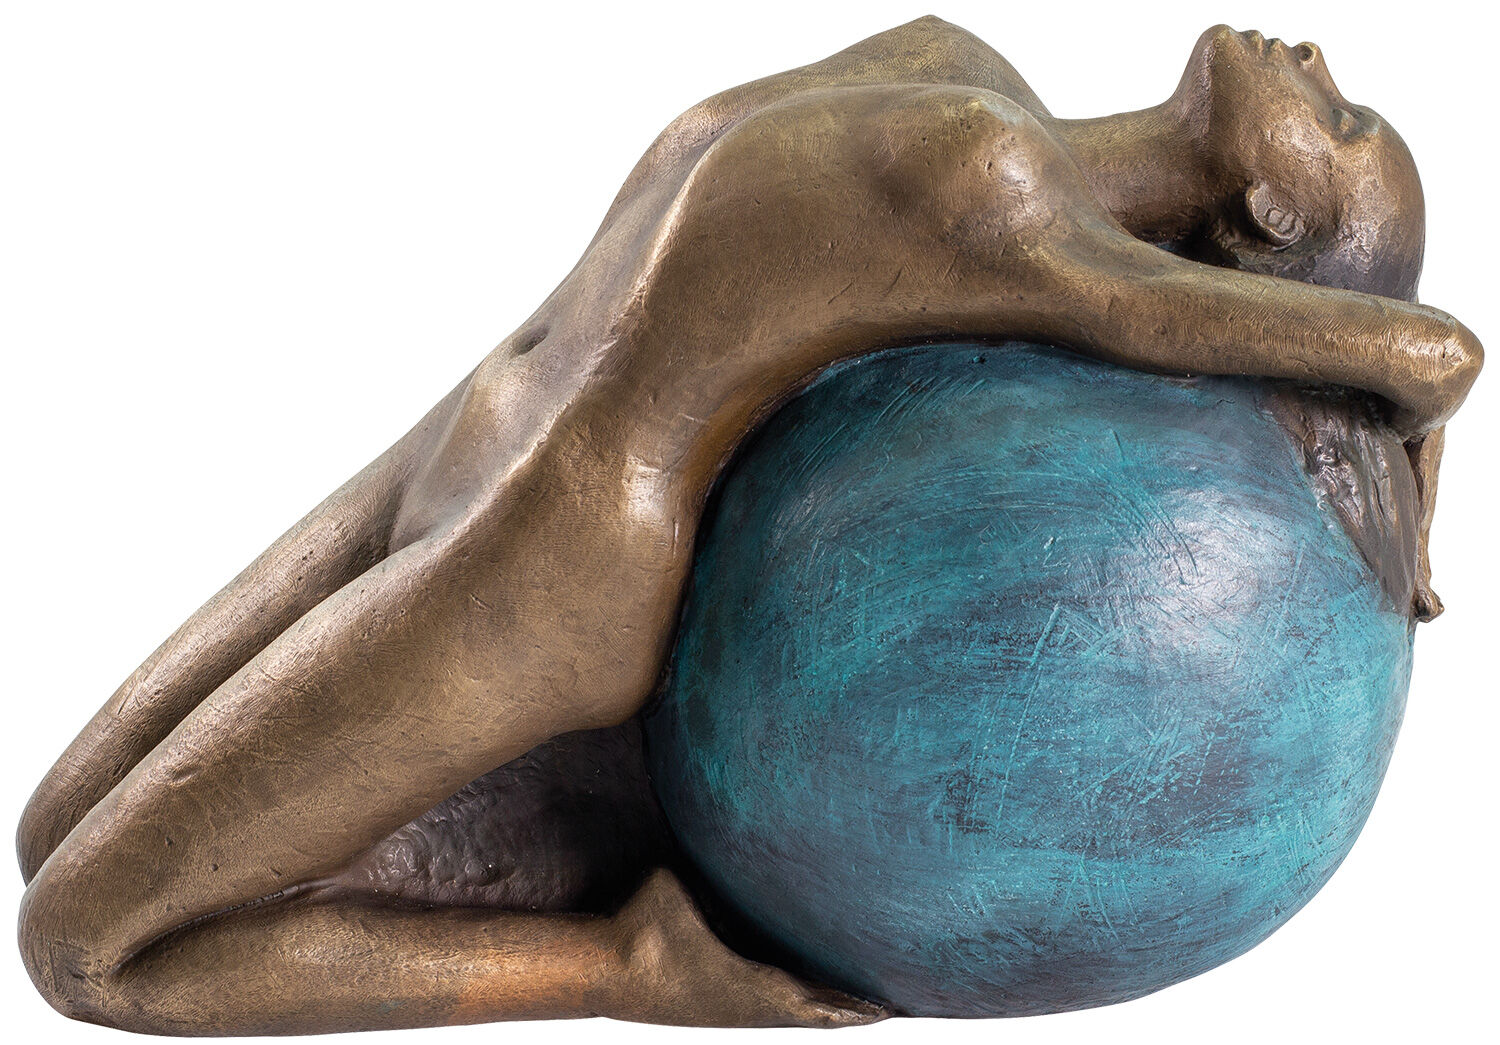 Sculpture "Letting Go", bronze by Sorina von Keyserling